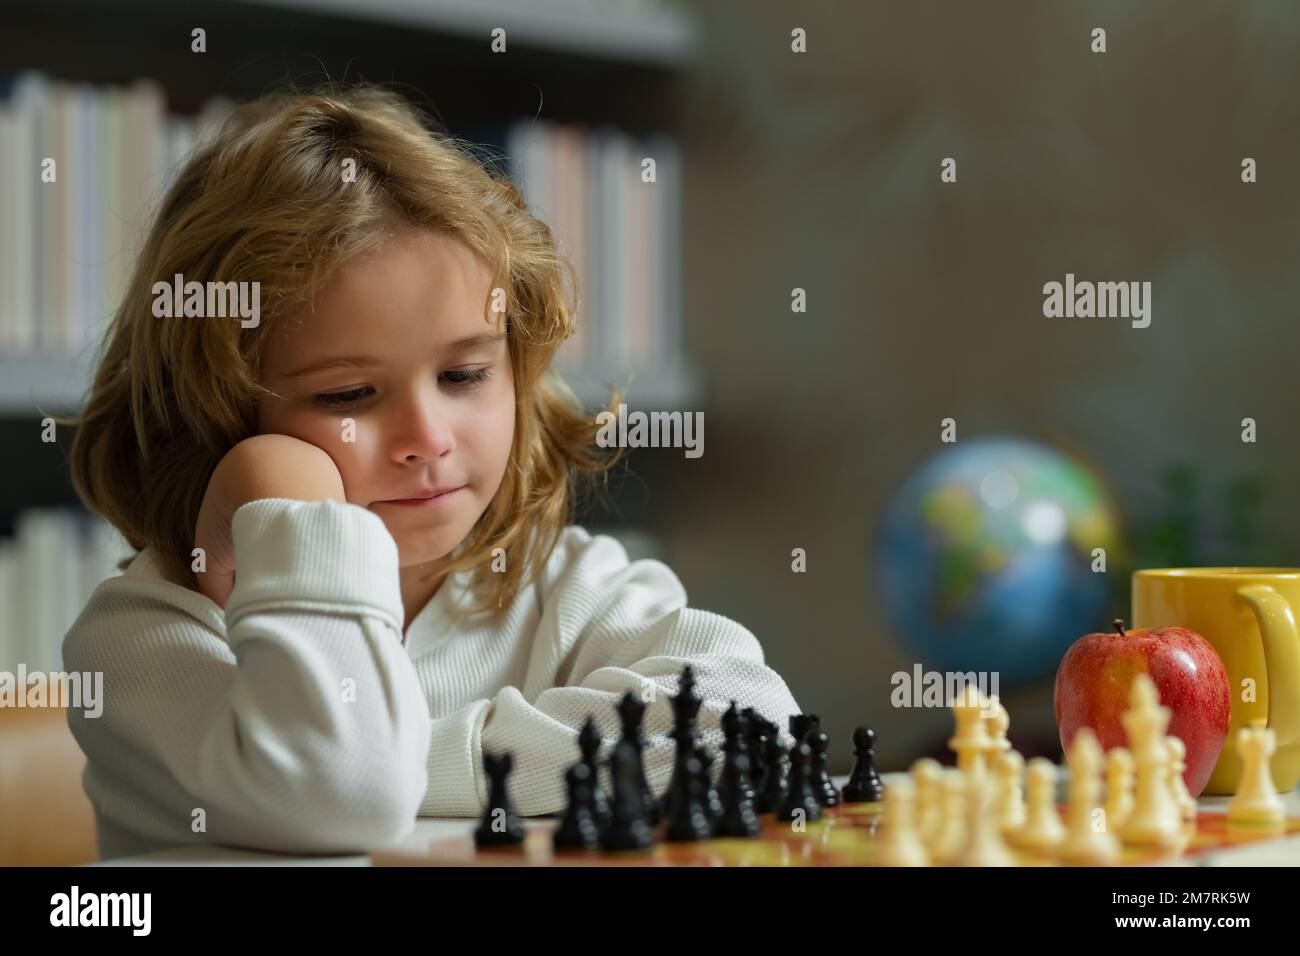 École d'échecs. Enfant pense ou plan au jeu d'échecs dans la salle de classe. Des écoliers intelligents, intelligents et intelligents. Développement et logique du cerveau. Banque D'Images